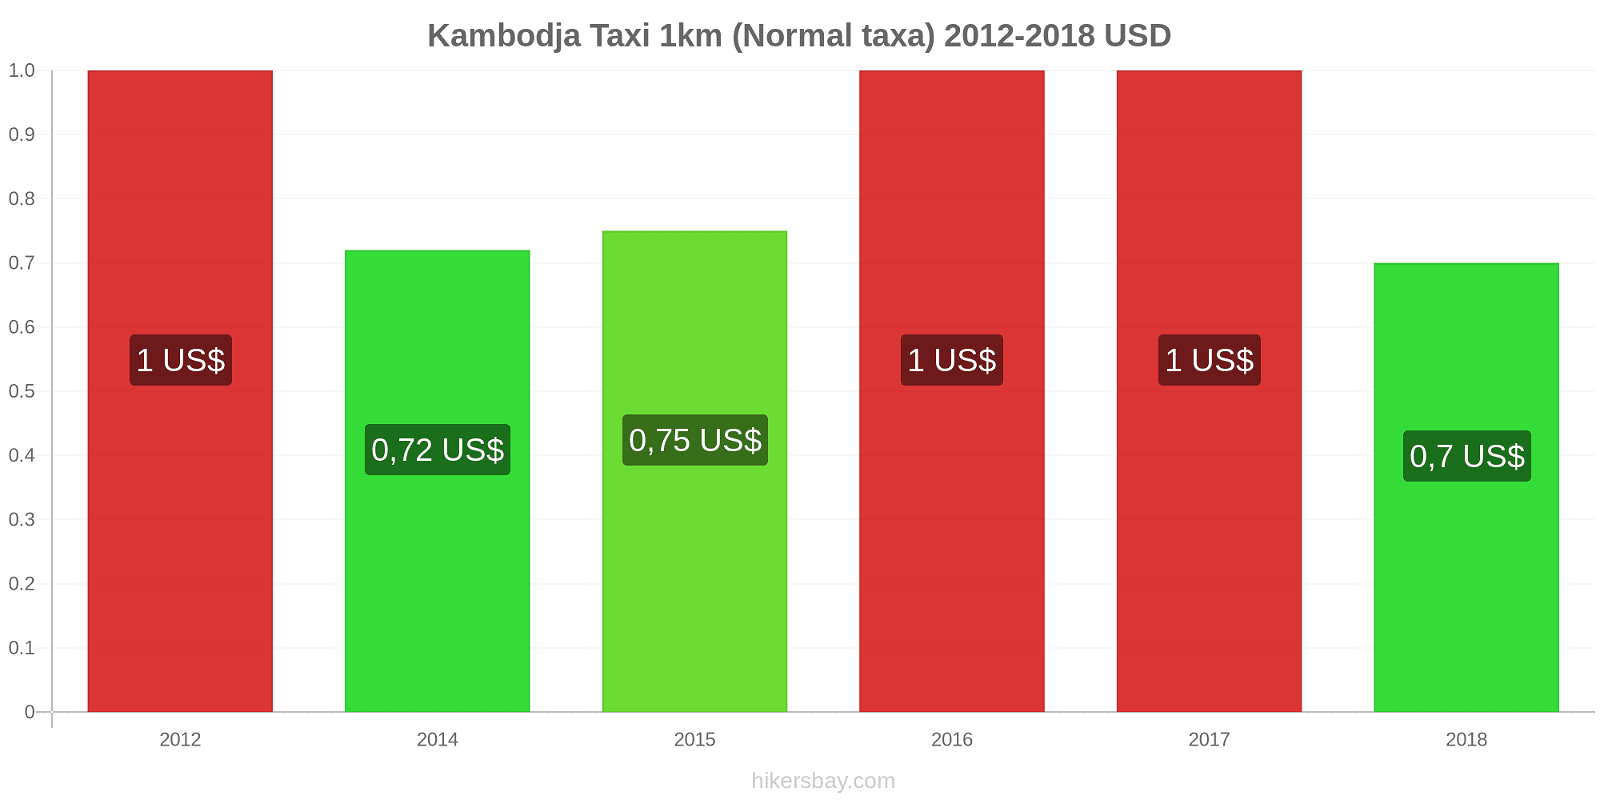 Kambodja prisändringar Taxi 1km (Normal taxa) hikersbay.com